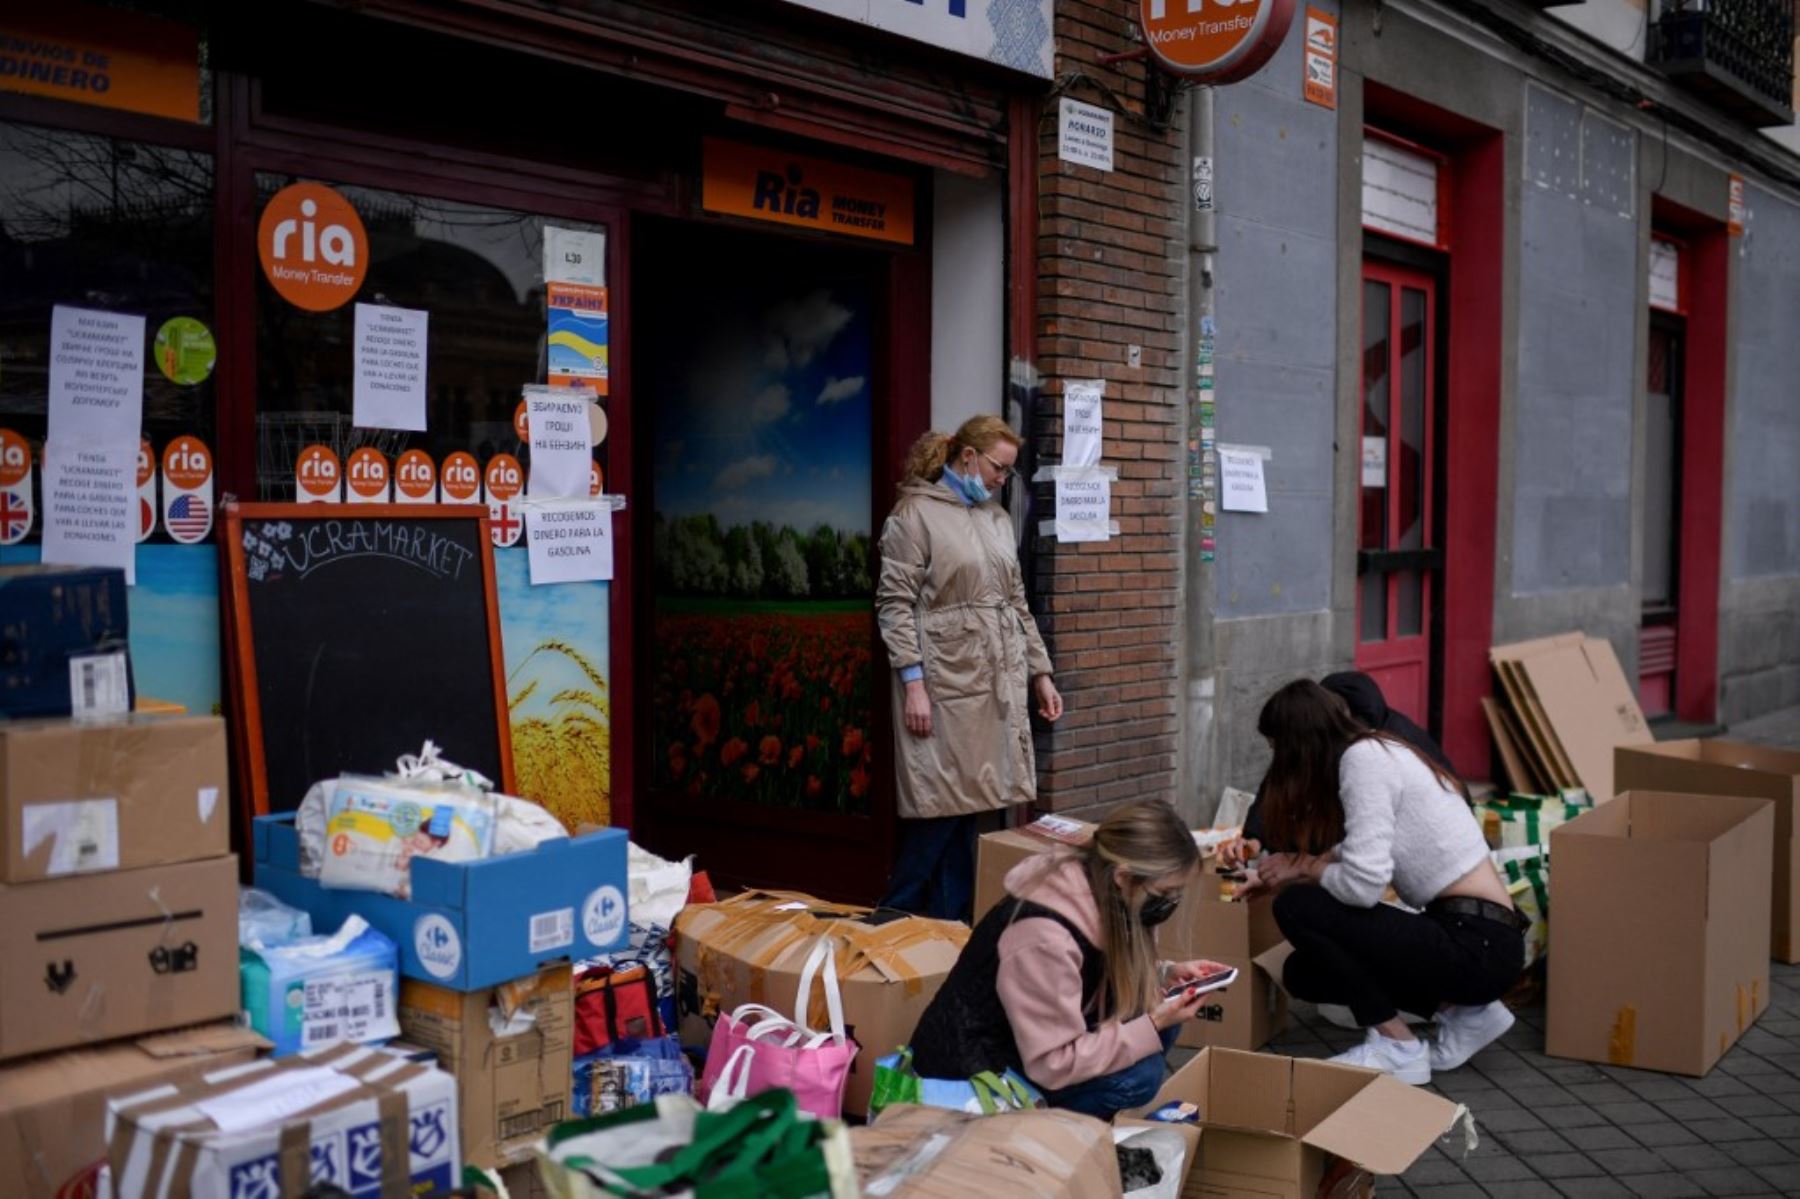 Los voluntarios empaquetan artículos esenciales donados como parte de una campaña de recolección para apoyar a los ciudadanos en Ucrania, frente a la tienda "Ukramarket" en Madrid. Foto: AFP